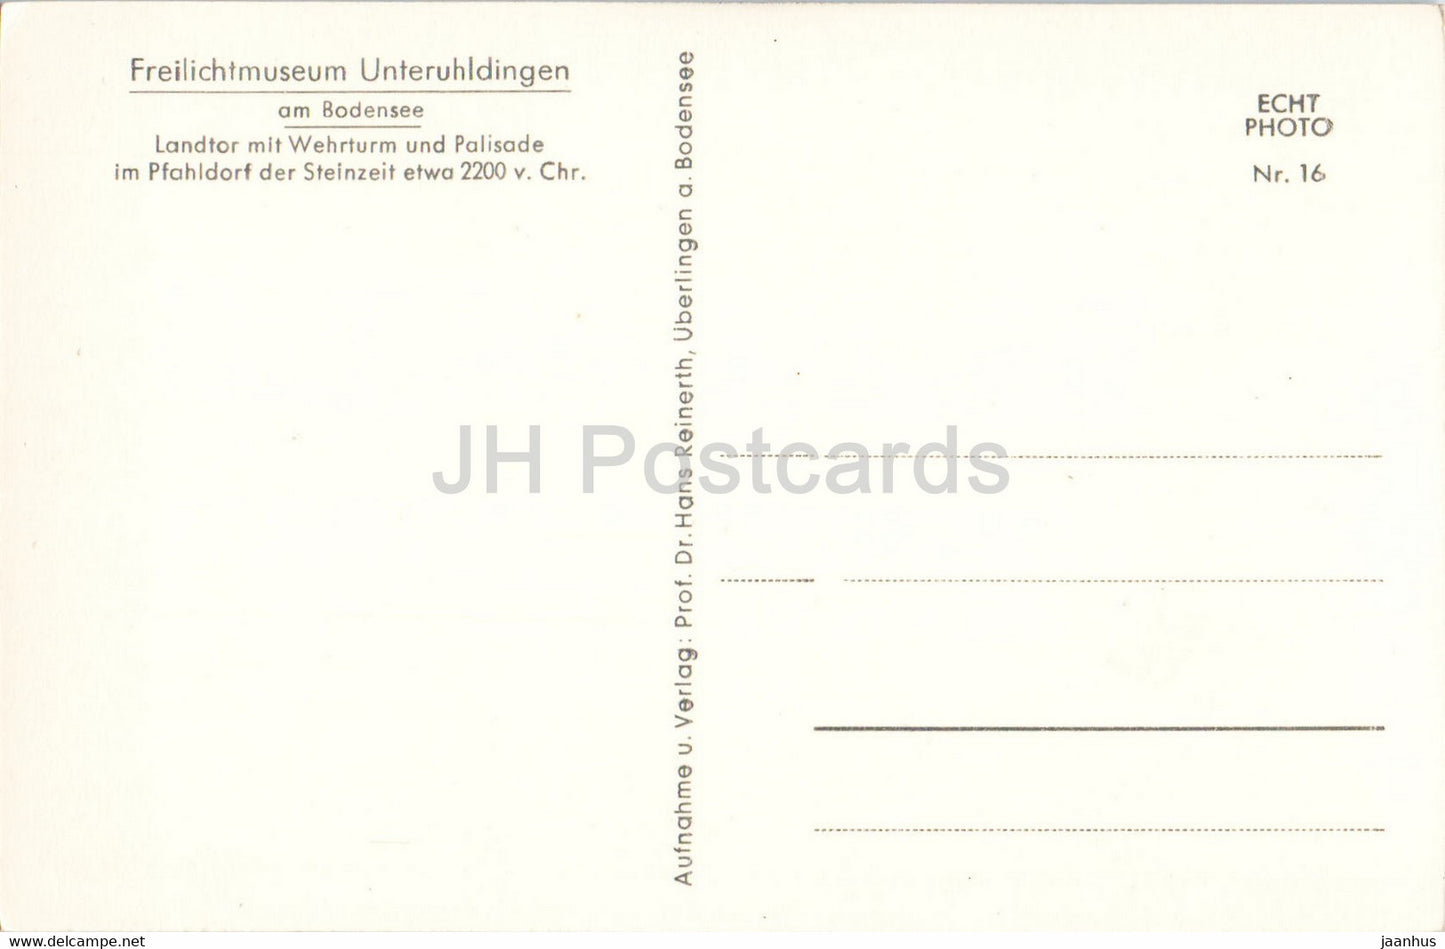 Freilichtmuseum Unteruhldingen am Bodensee - Landtor mit Wehrturm - ancient world - old postcard - Germany - unused